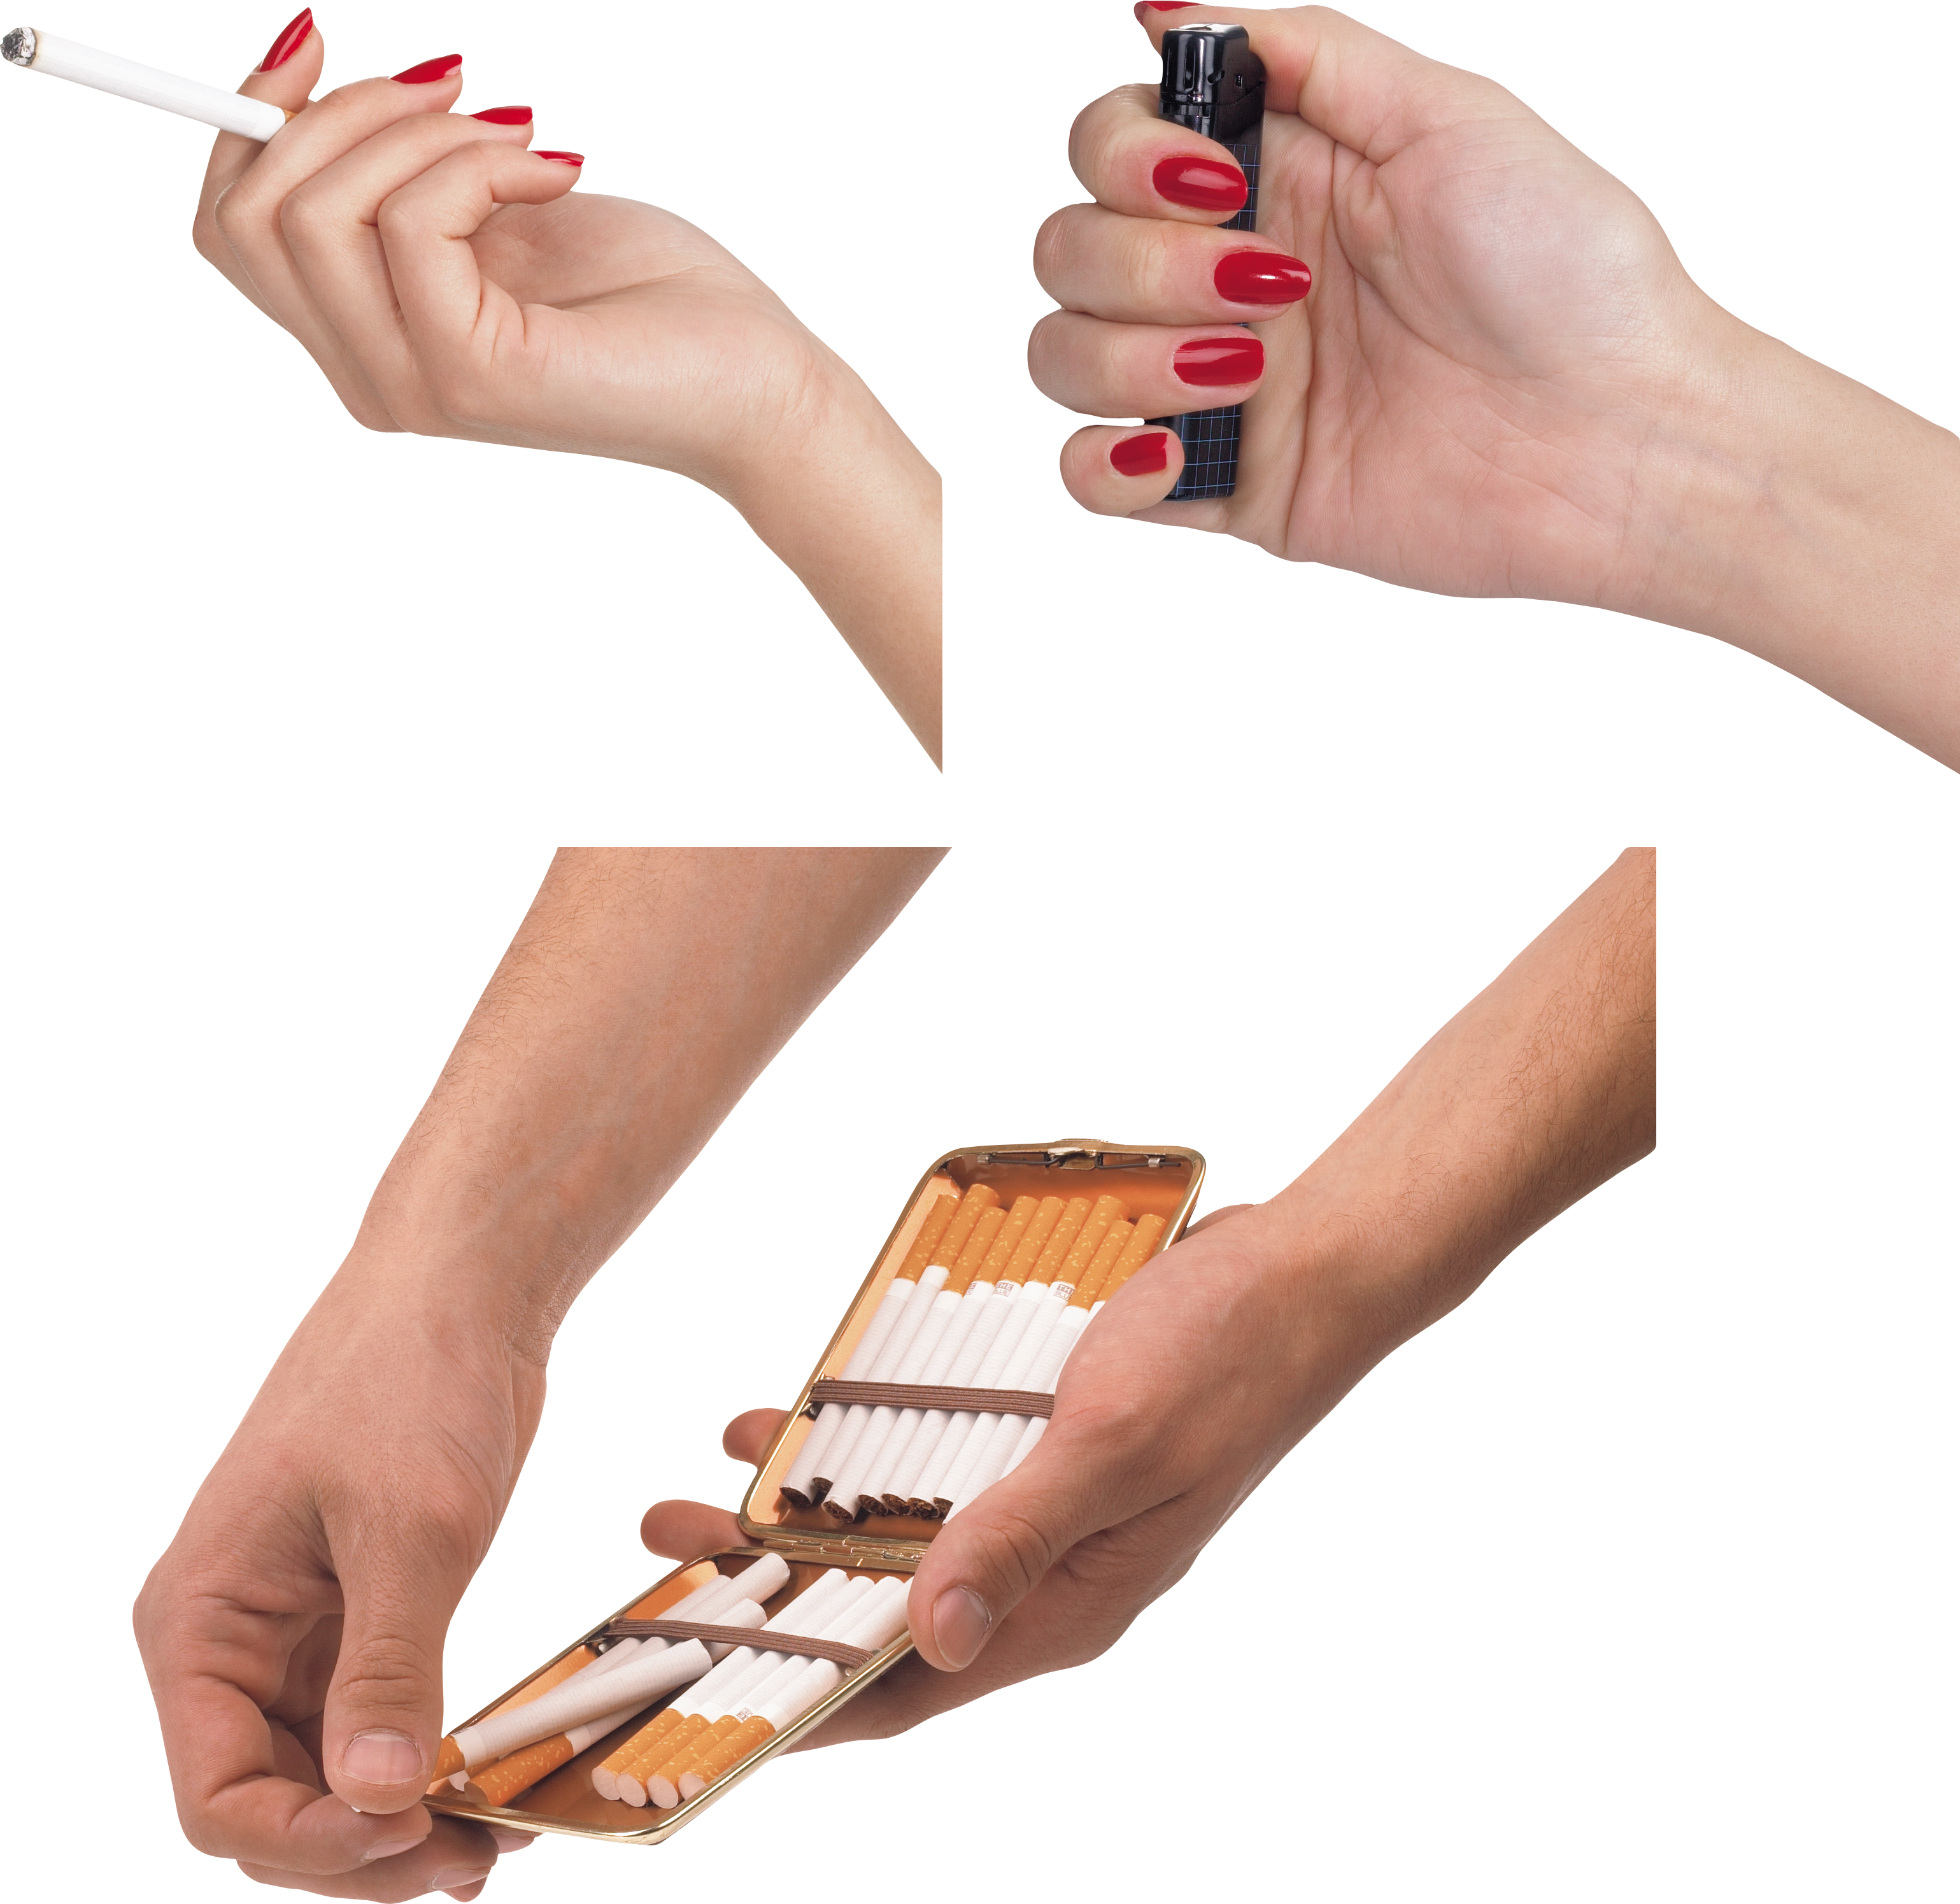 Zigarette in der Hand